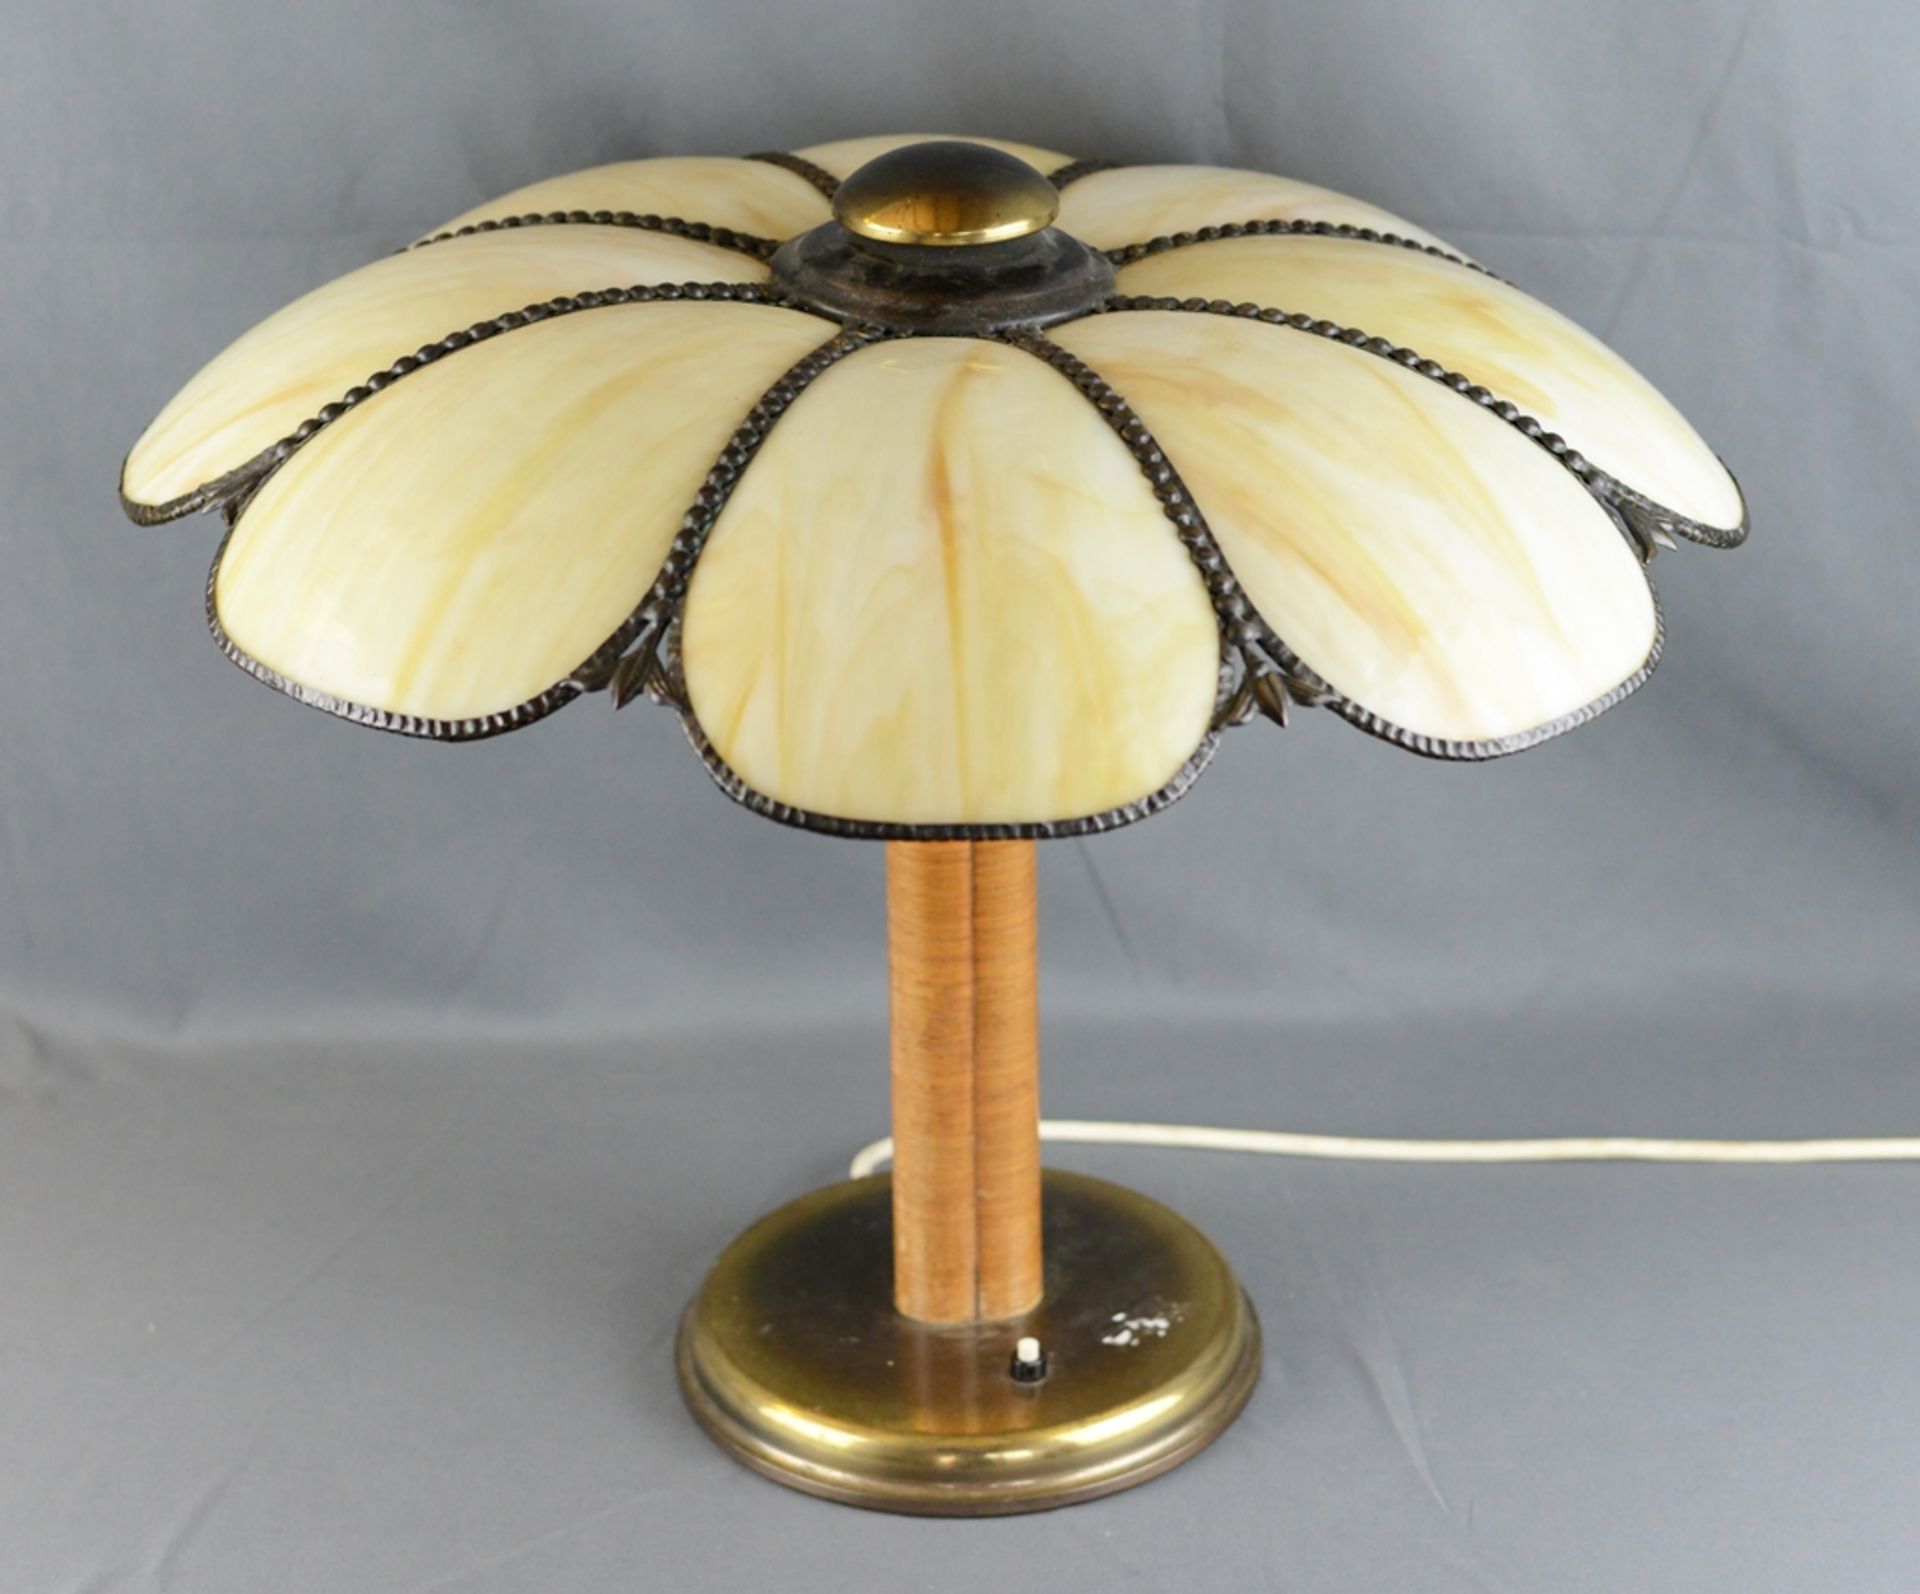 Tischlampe marmoriertes Glas mit Perlmutteffekt als Blütenblätter geformt, eingefasst in - Image 2 of 4